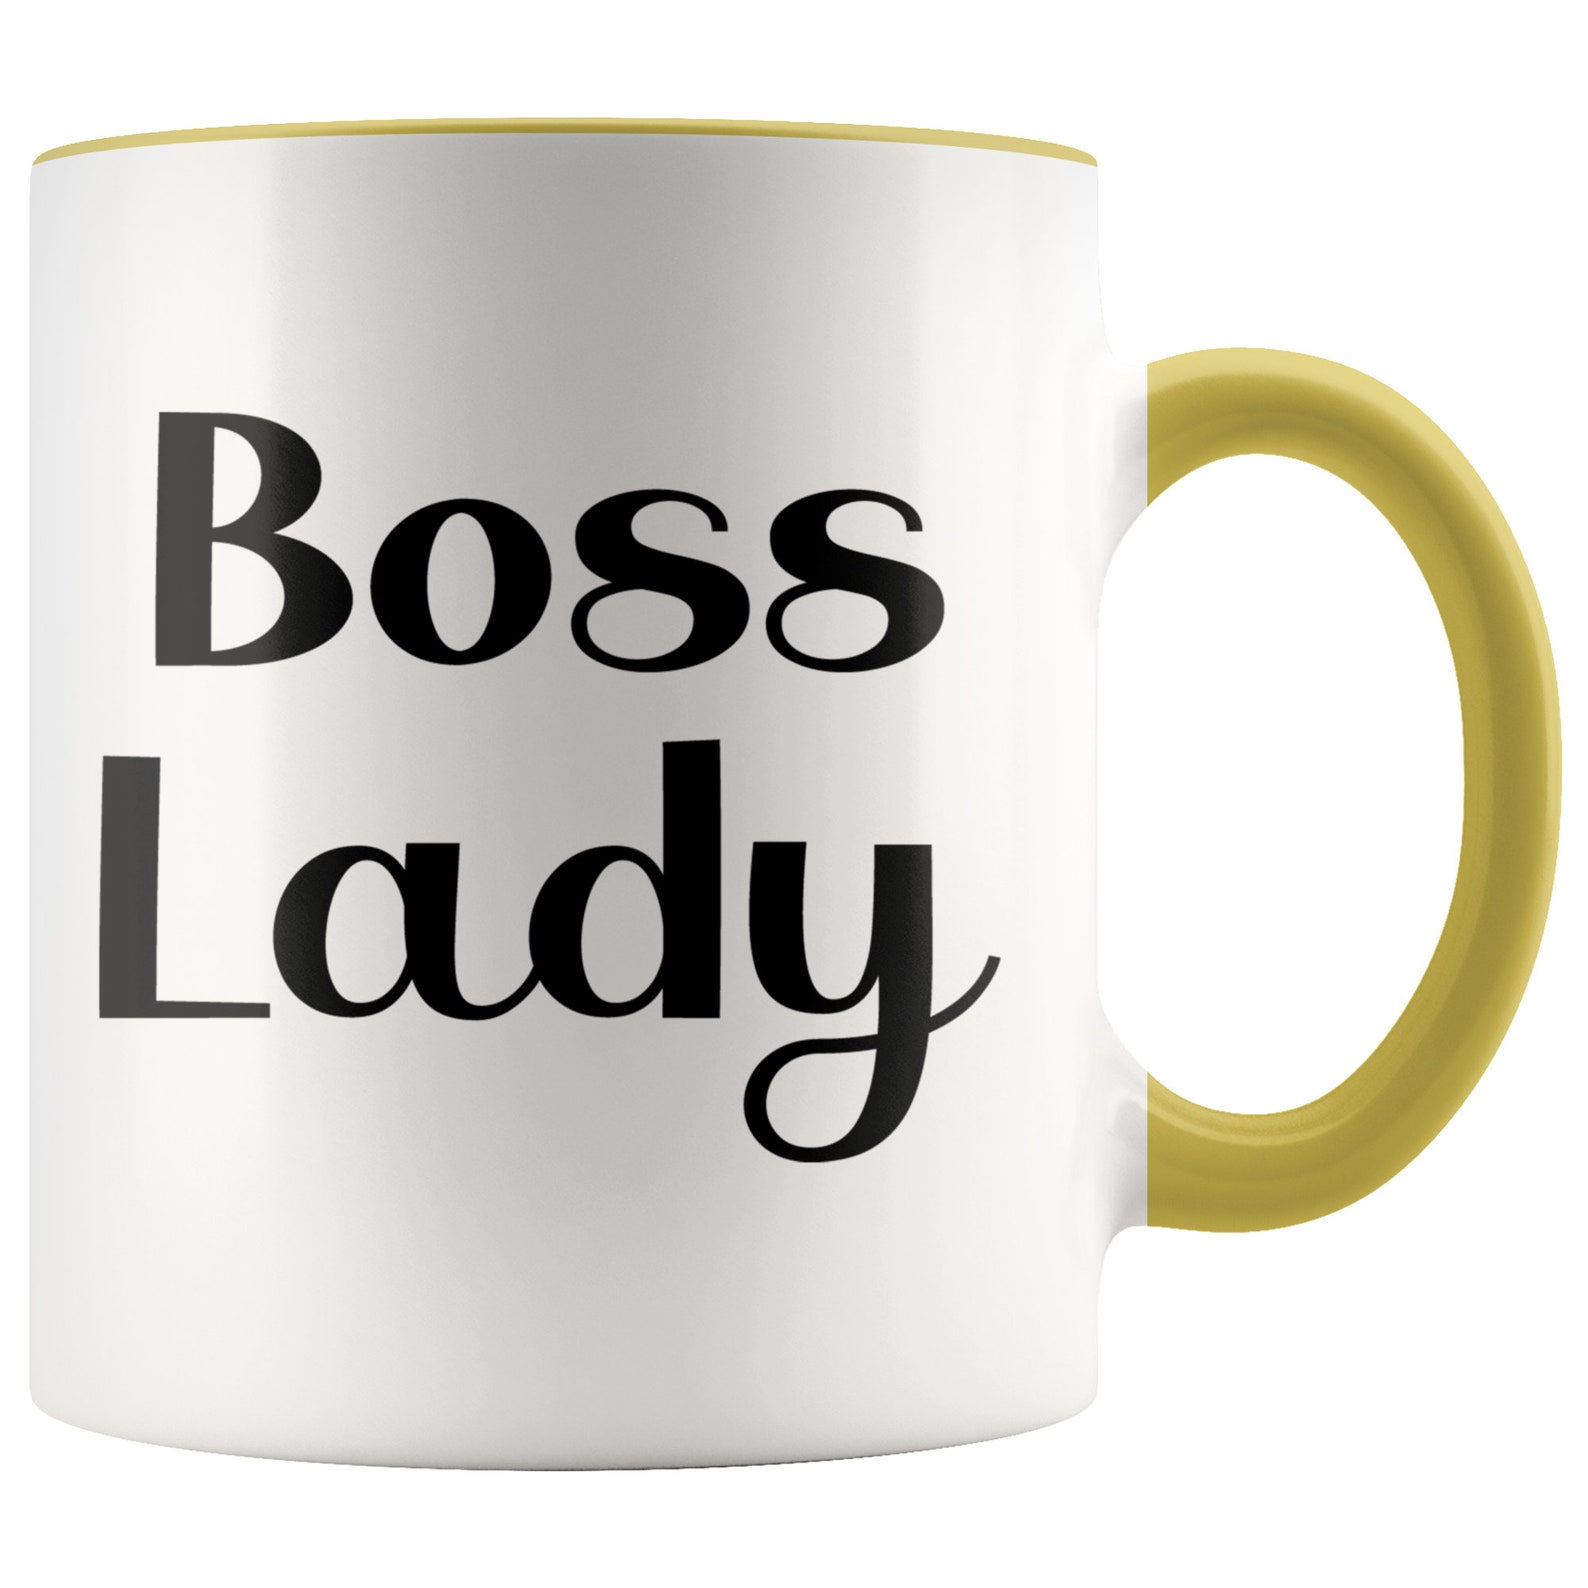 Boss Lady Mug Funny Mugs Friend Gifts Colleague Mug | Etsy